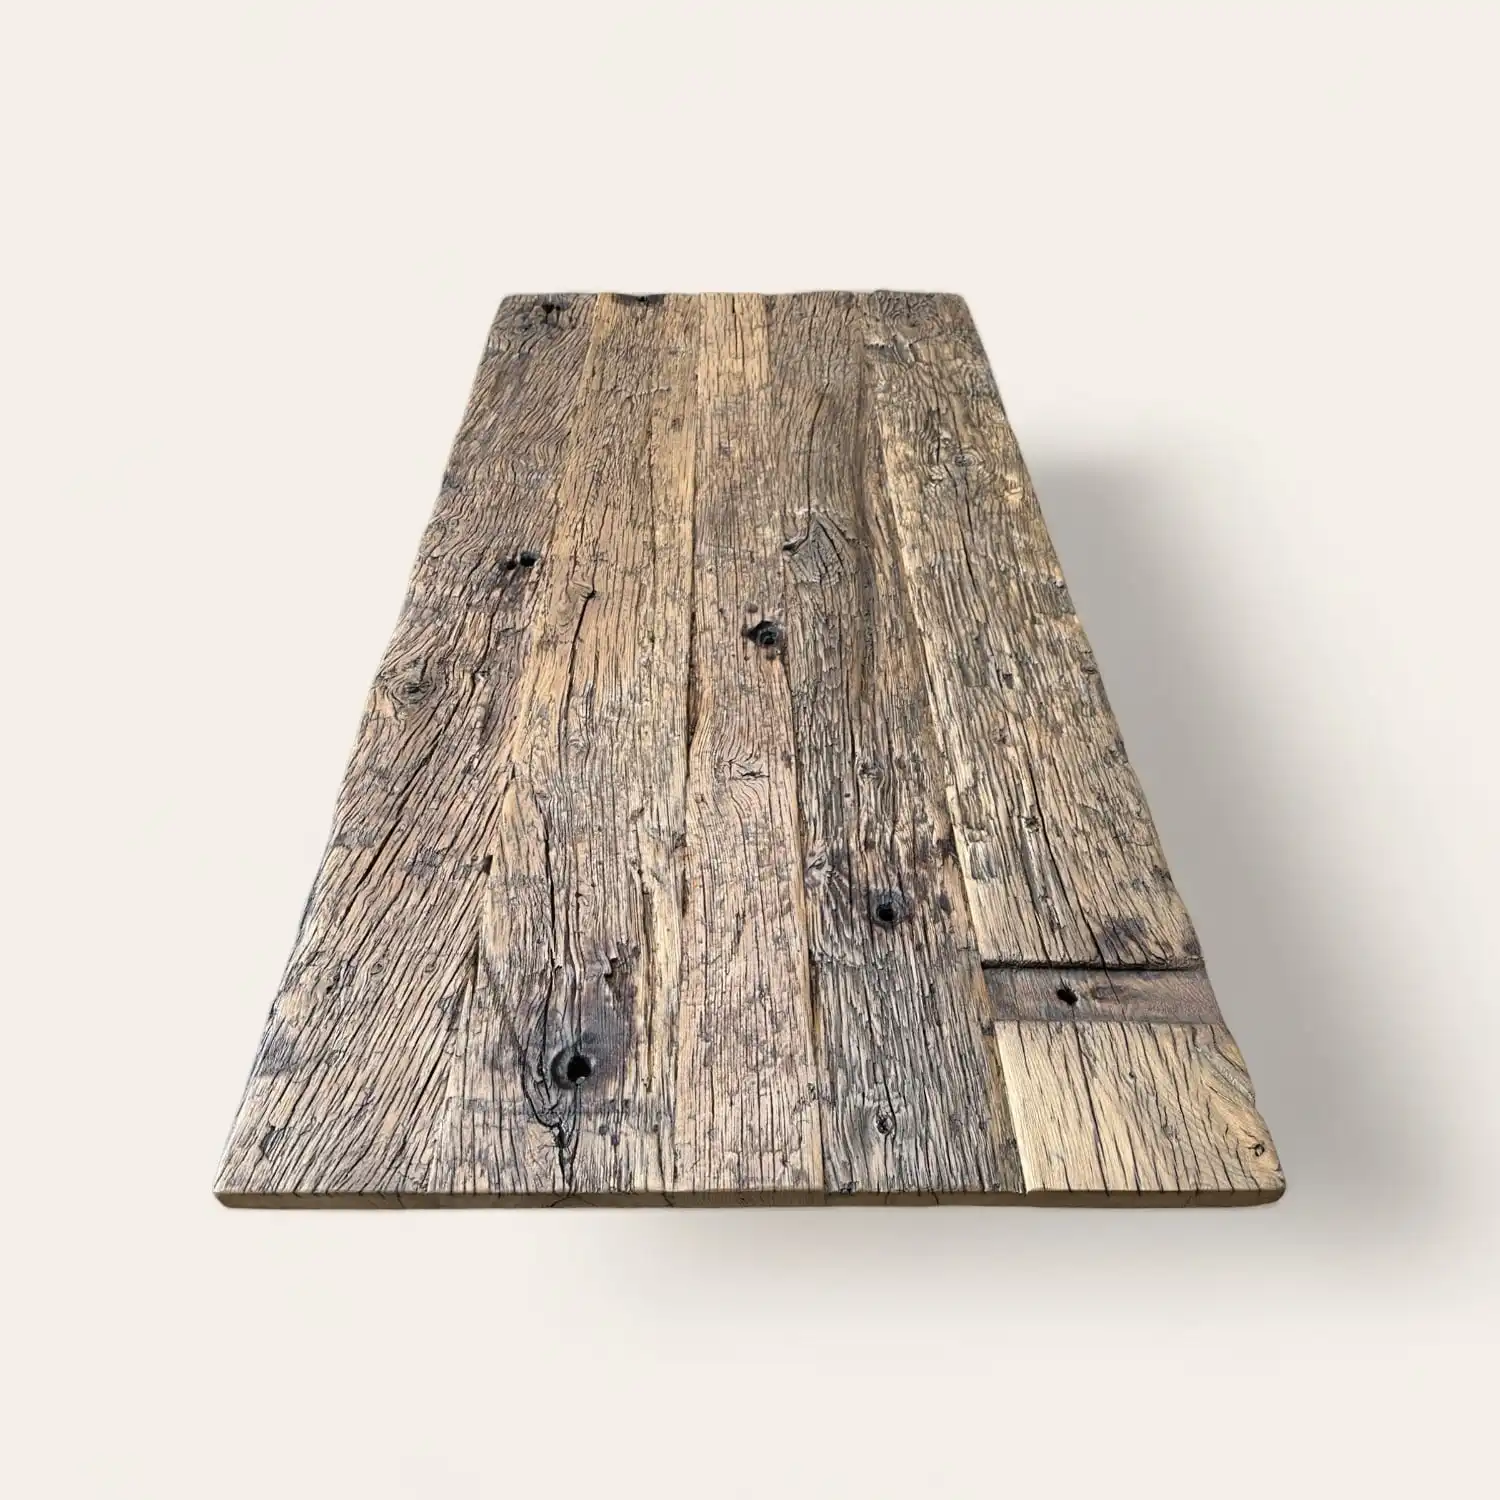  Une table rustique fabriquée à partir de vieux bois de récupération. 